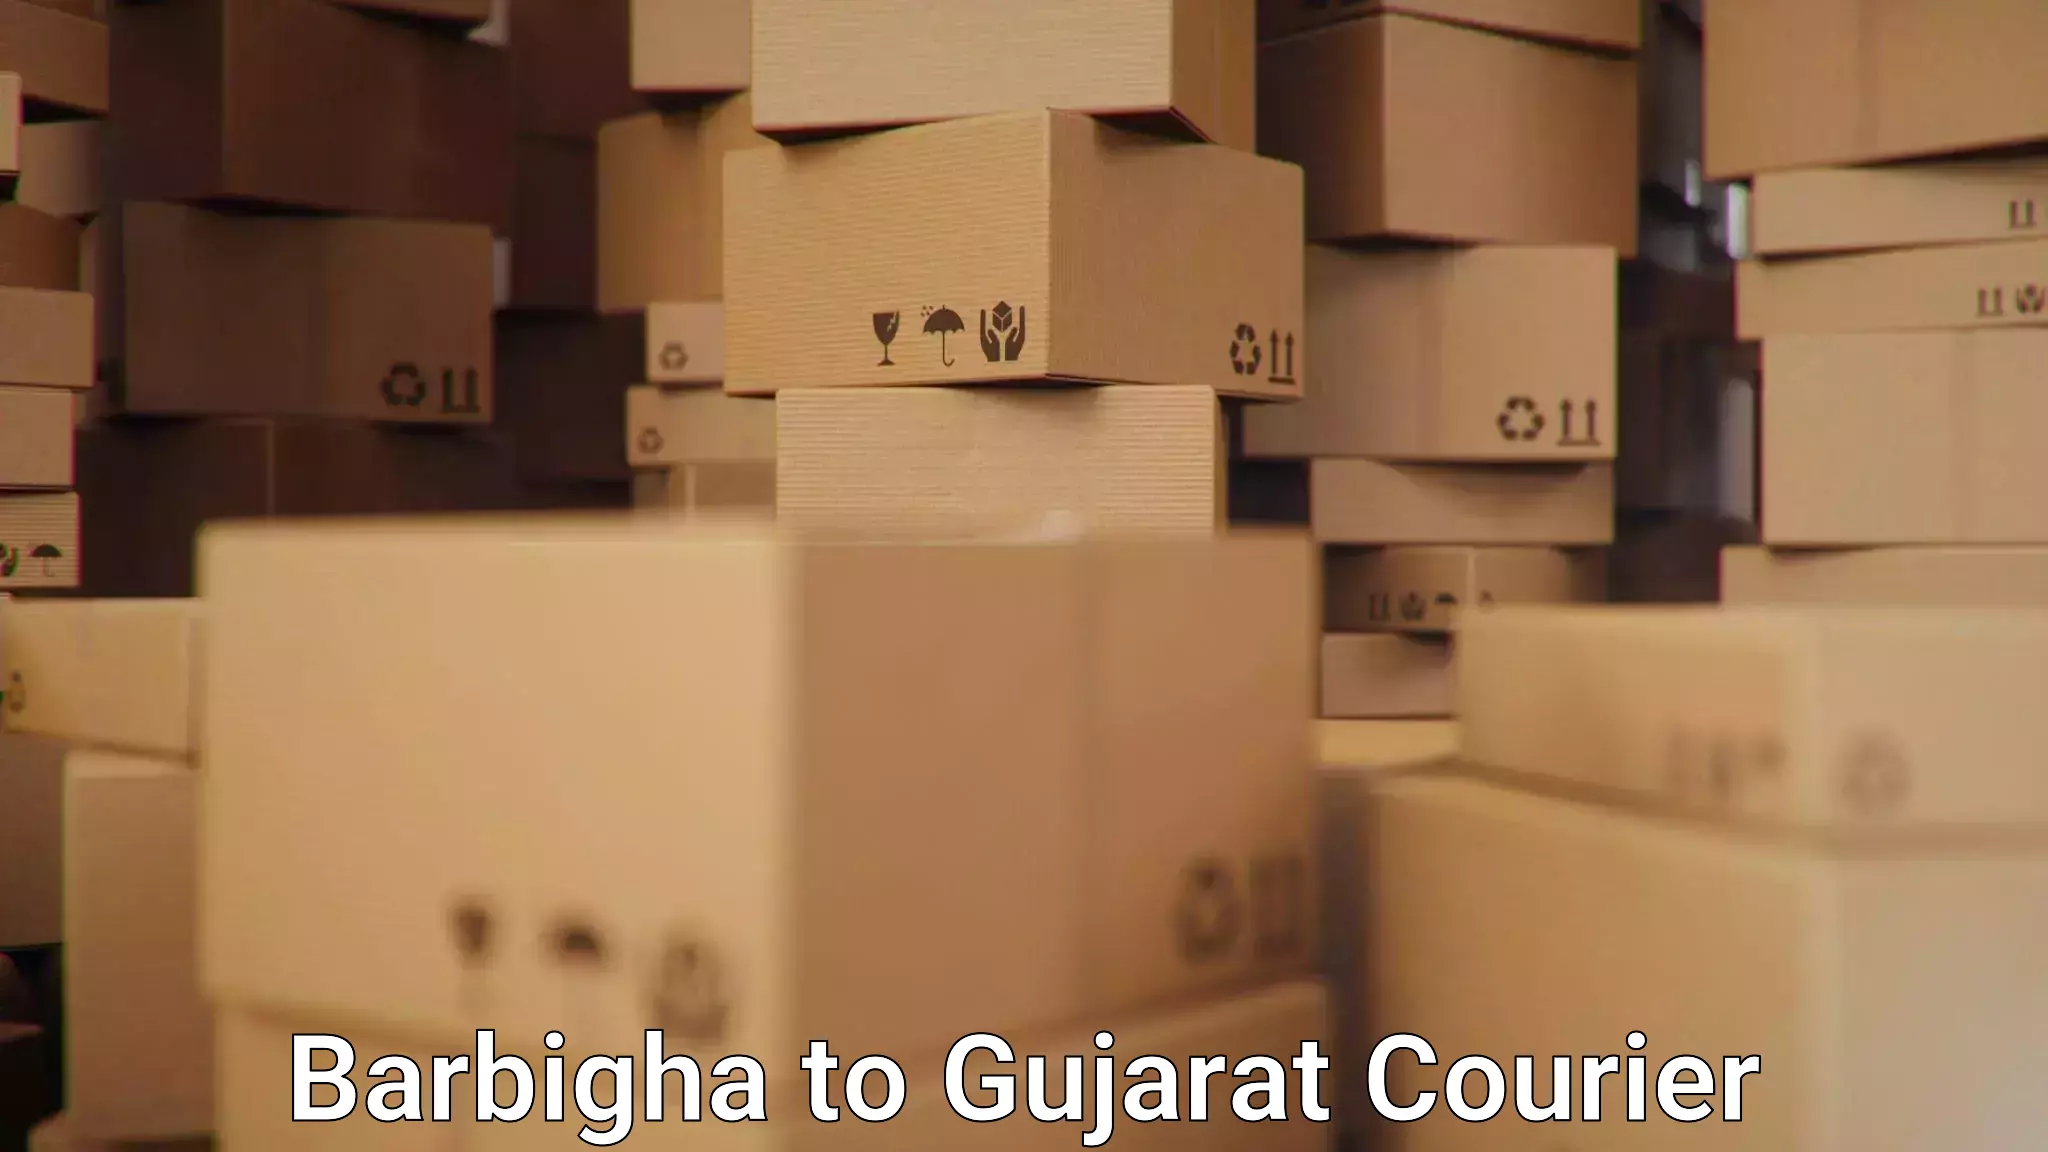 Urgent courier needs Barbigha to IIIT Surat